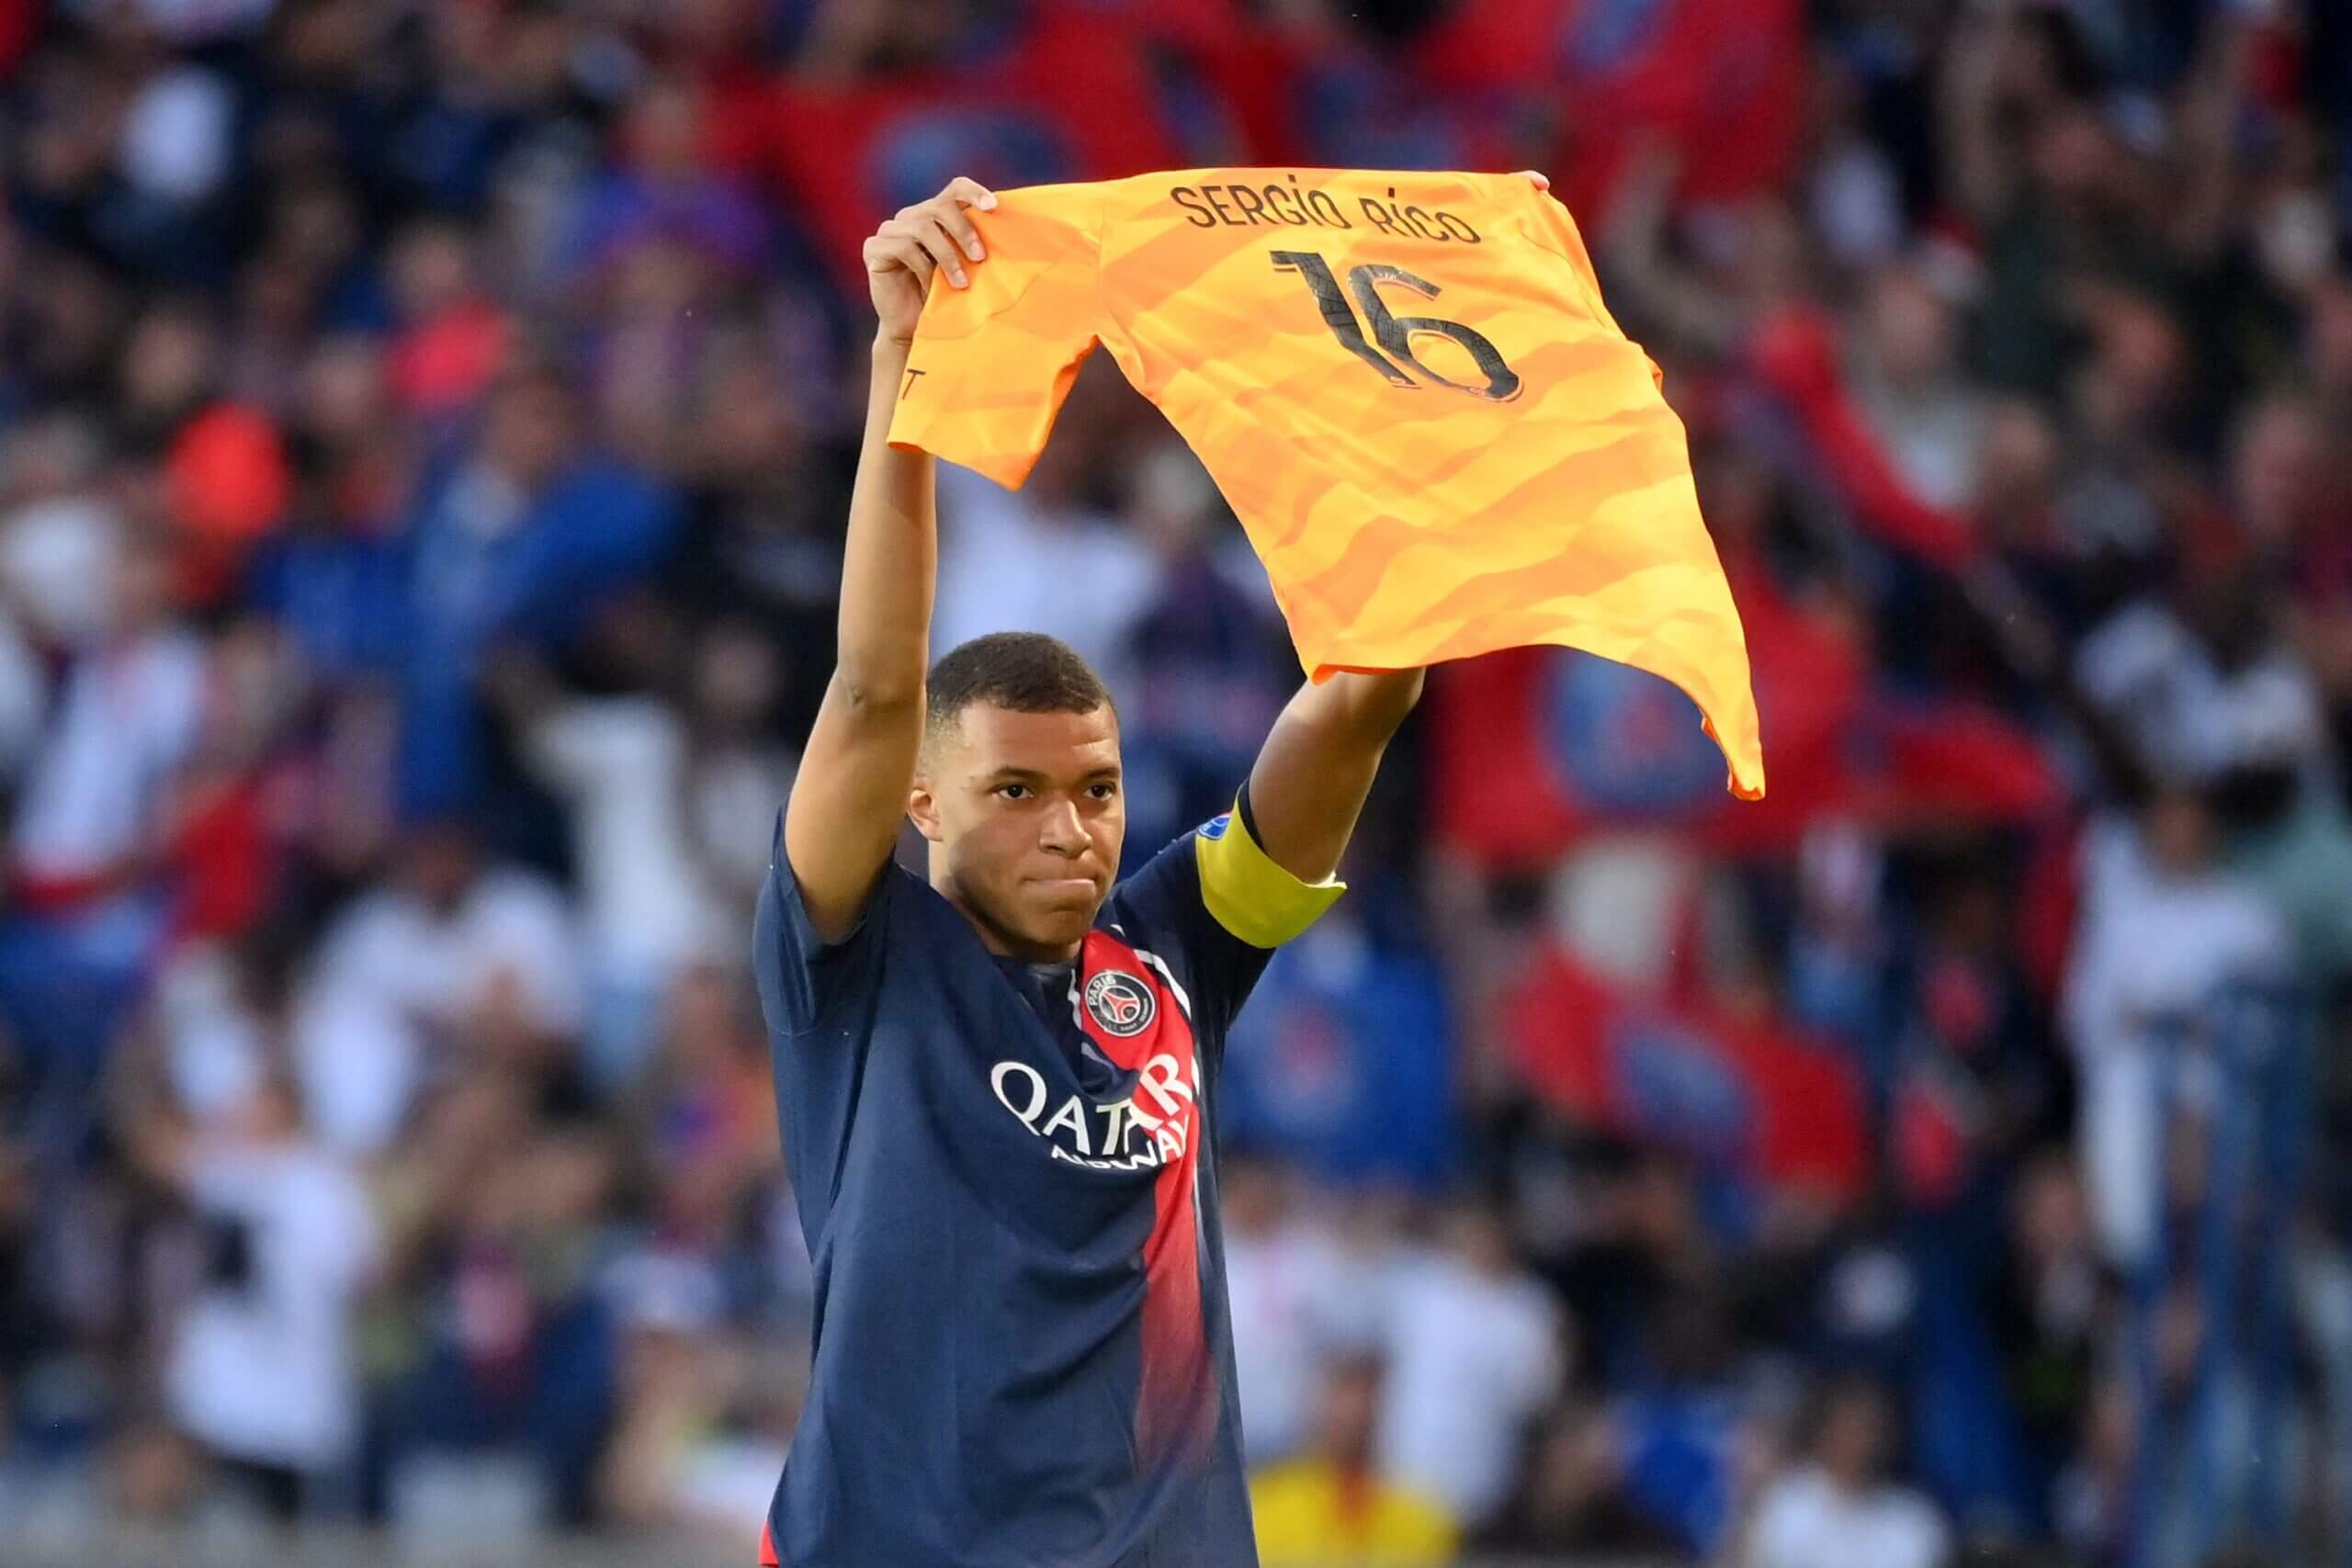 Mbappe giơ cao chiếc áo đấu của Rico để thể hiện sự ủng hộ của mình